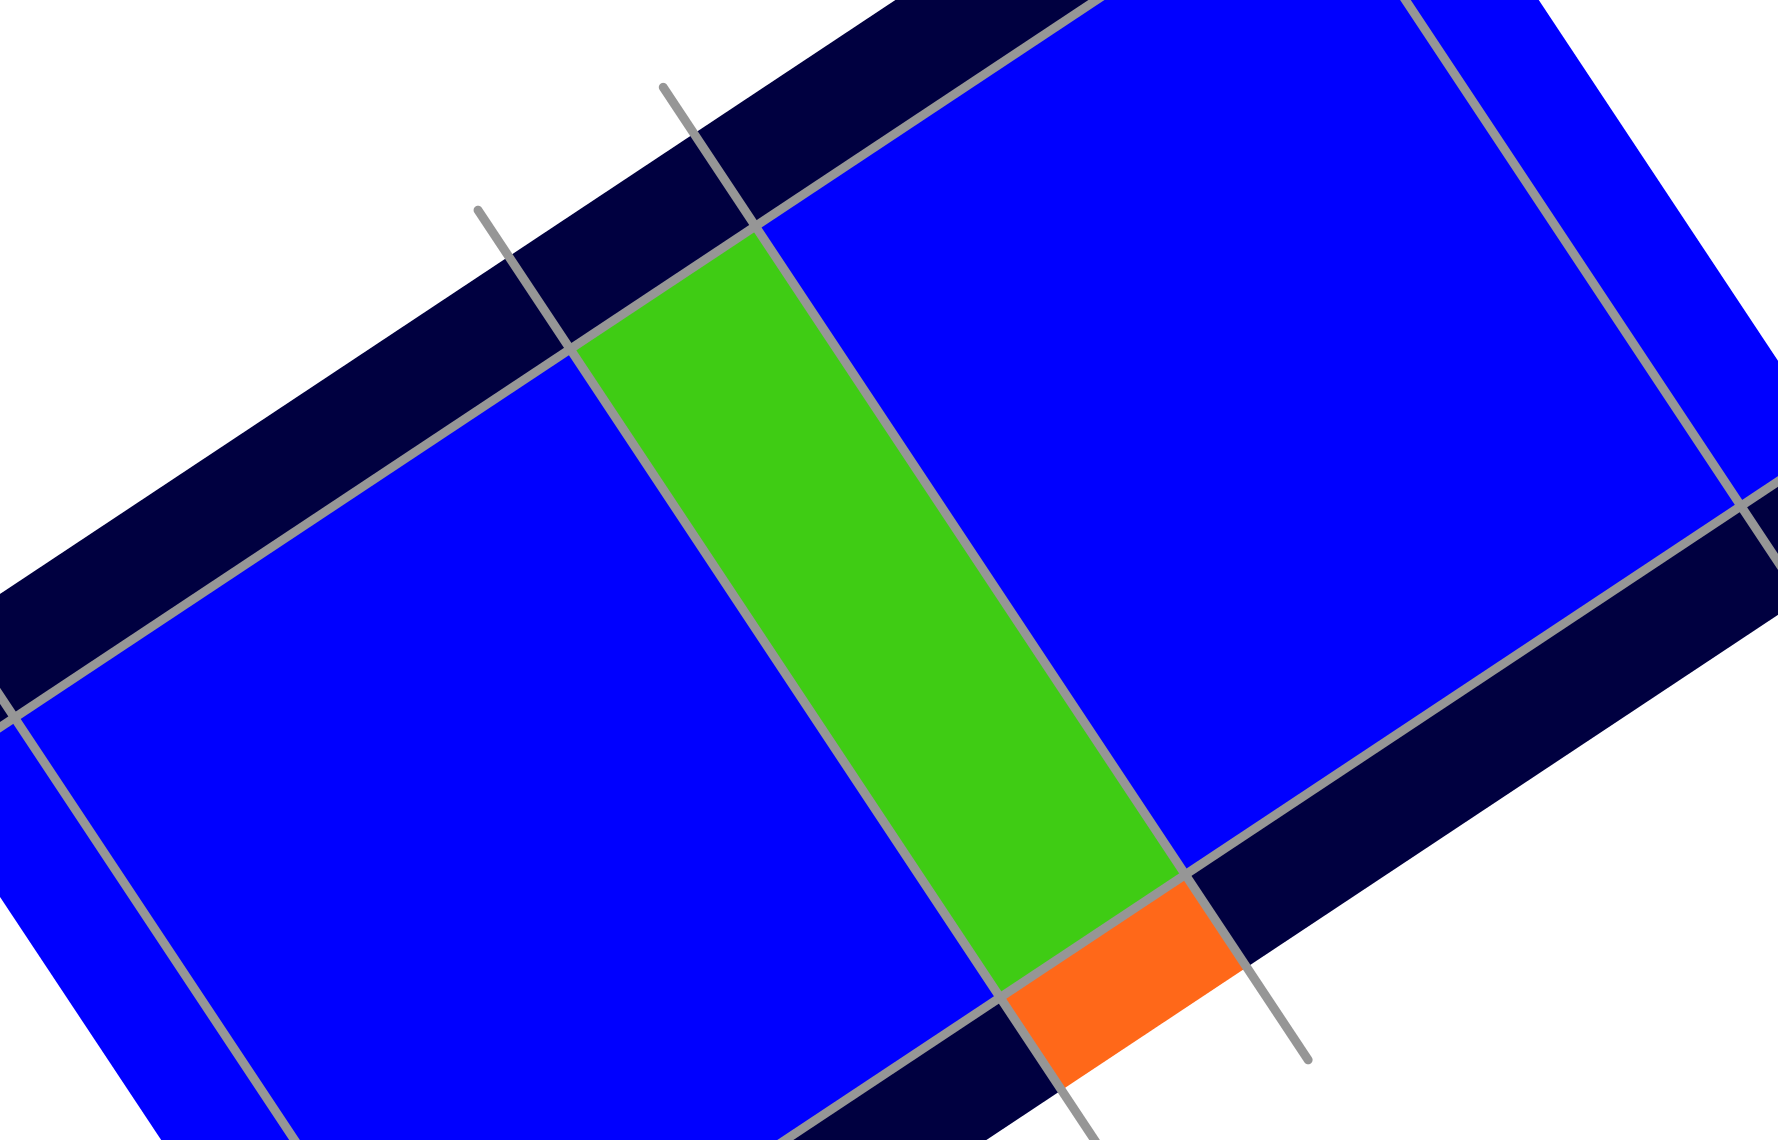 Grassy Hills Slide Template Grid Lines - Presentation Slide (1778x1140)